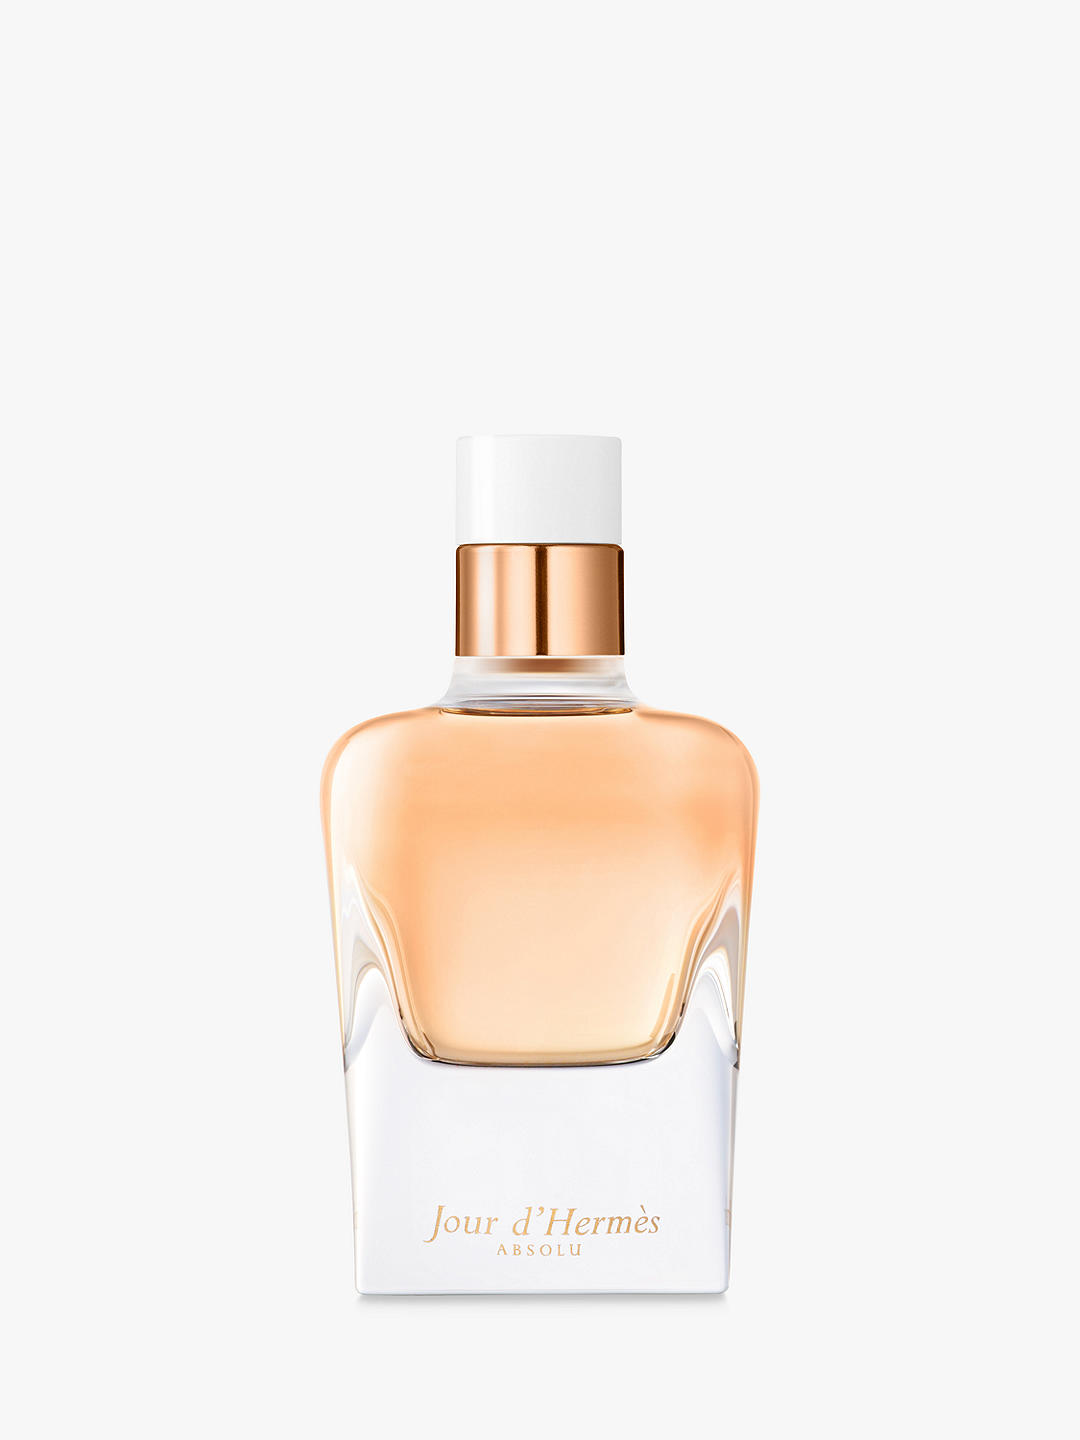 Hermès Jour d'Hermès Absolu Eau de Parfum Refillable, 85ml 1